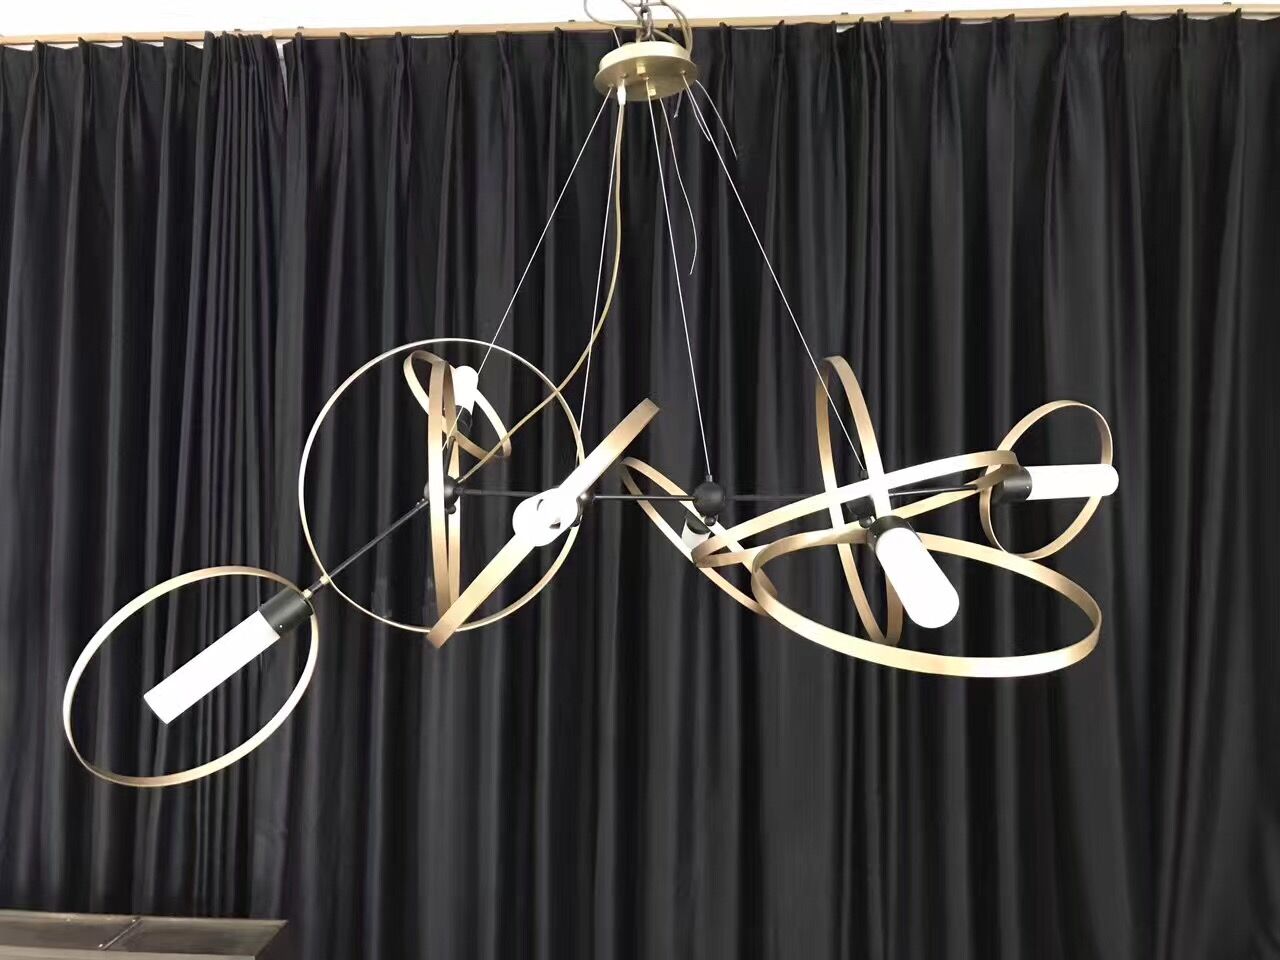 Customized Hanging Decorative Metal pendant lamps (KA00111)